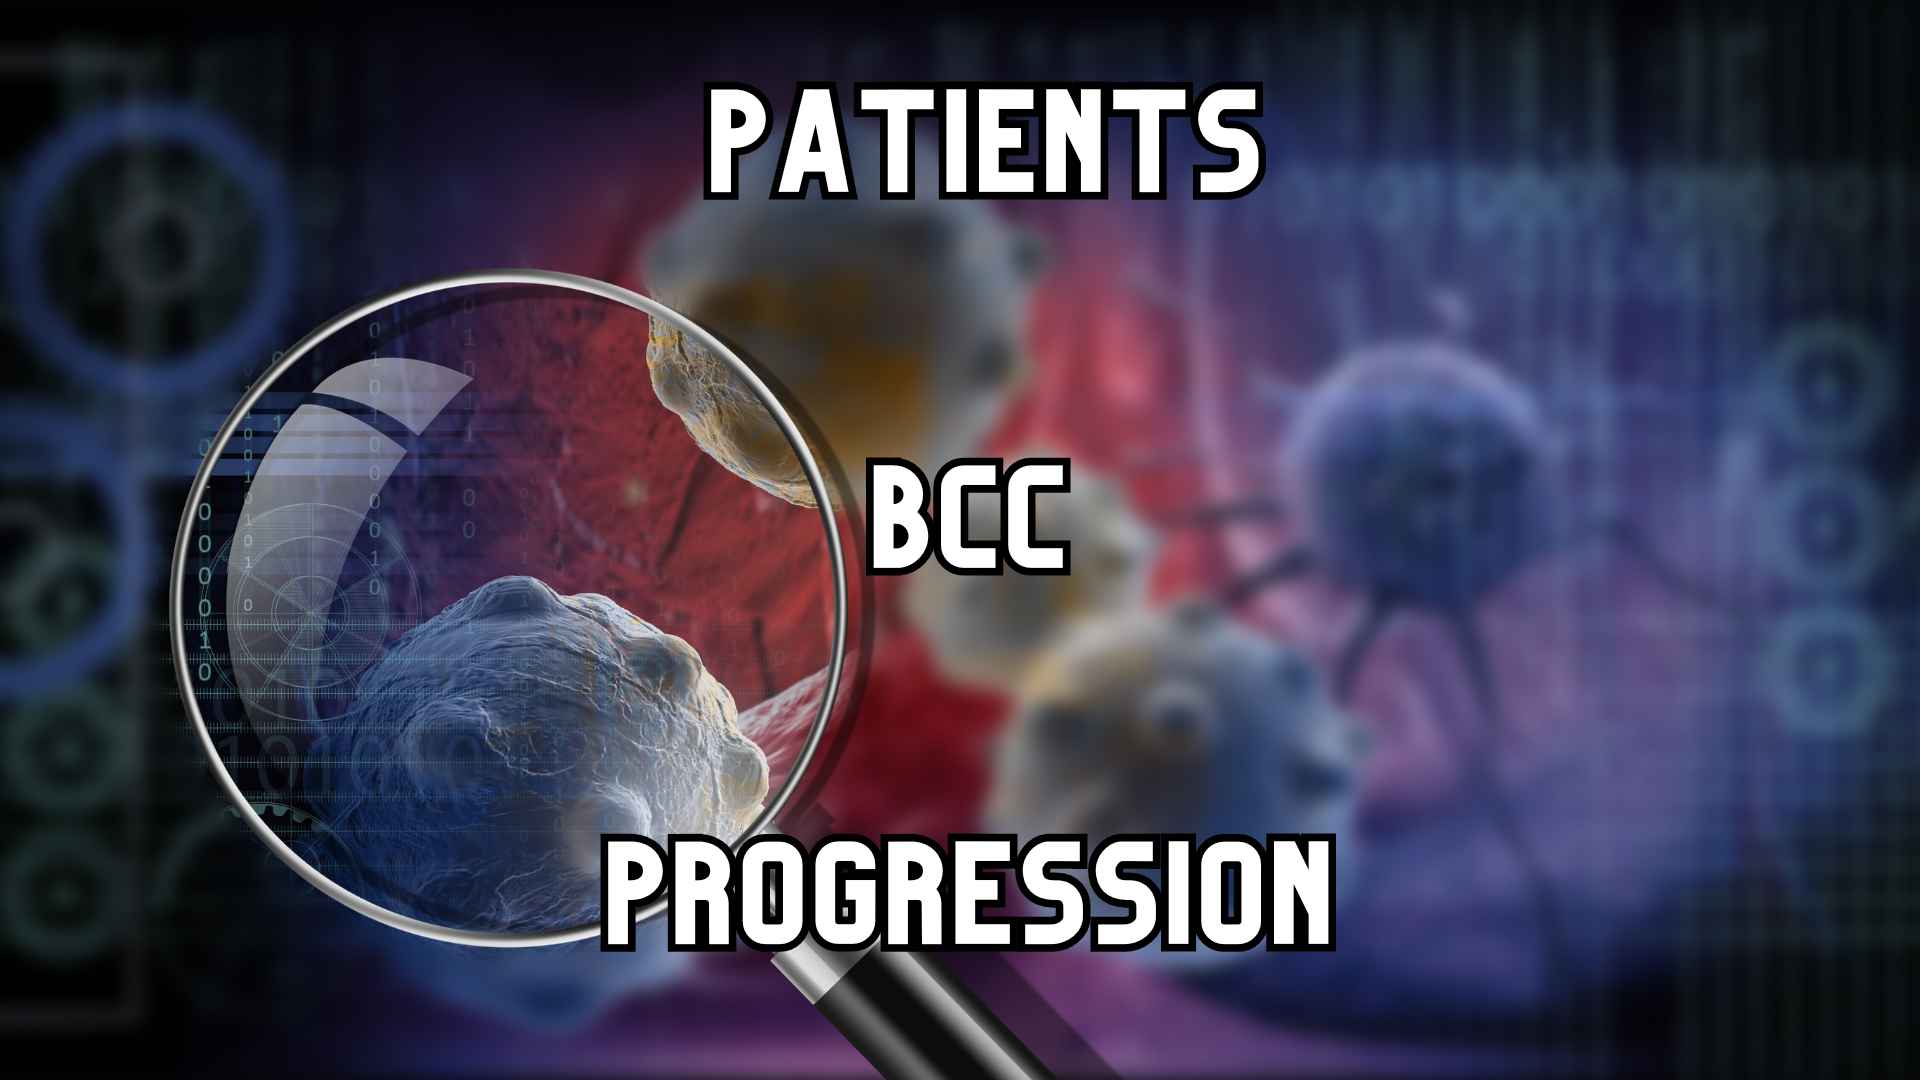 Patients bcc progression